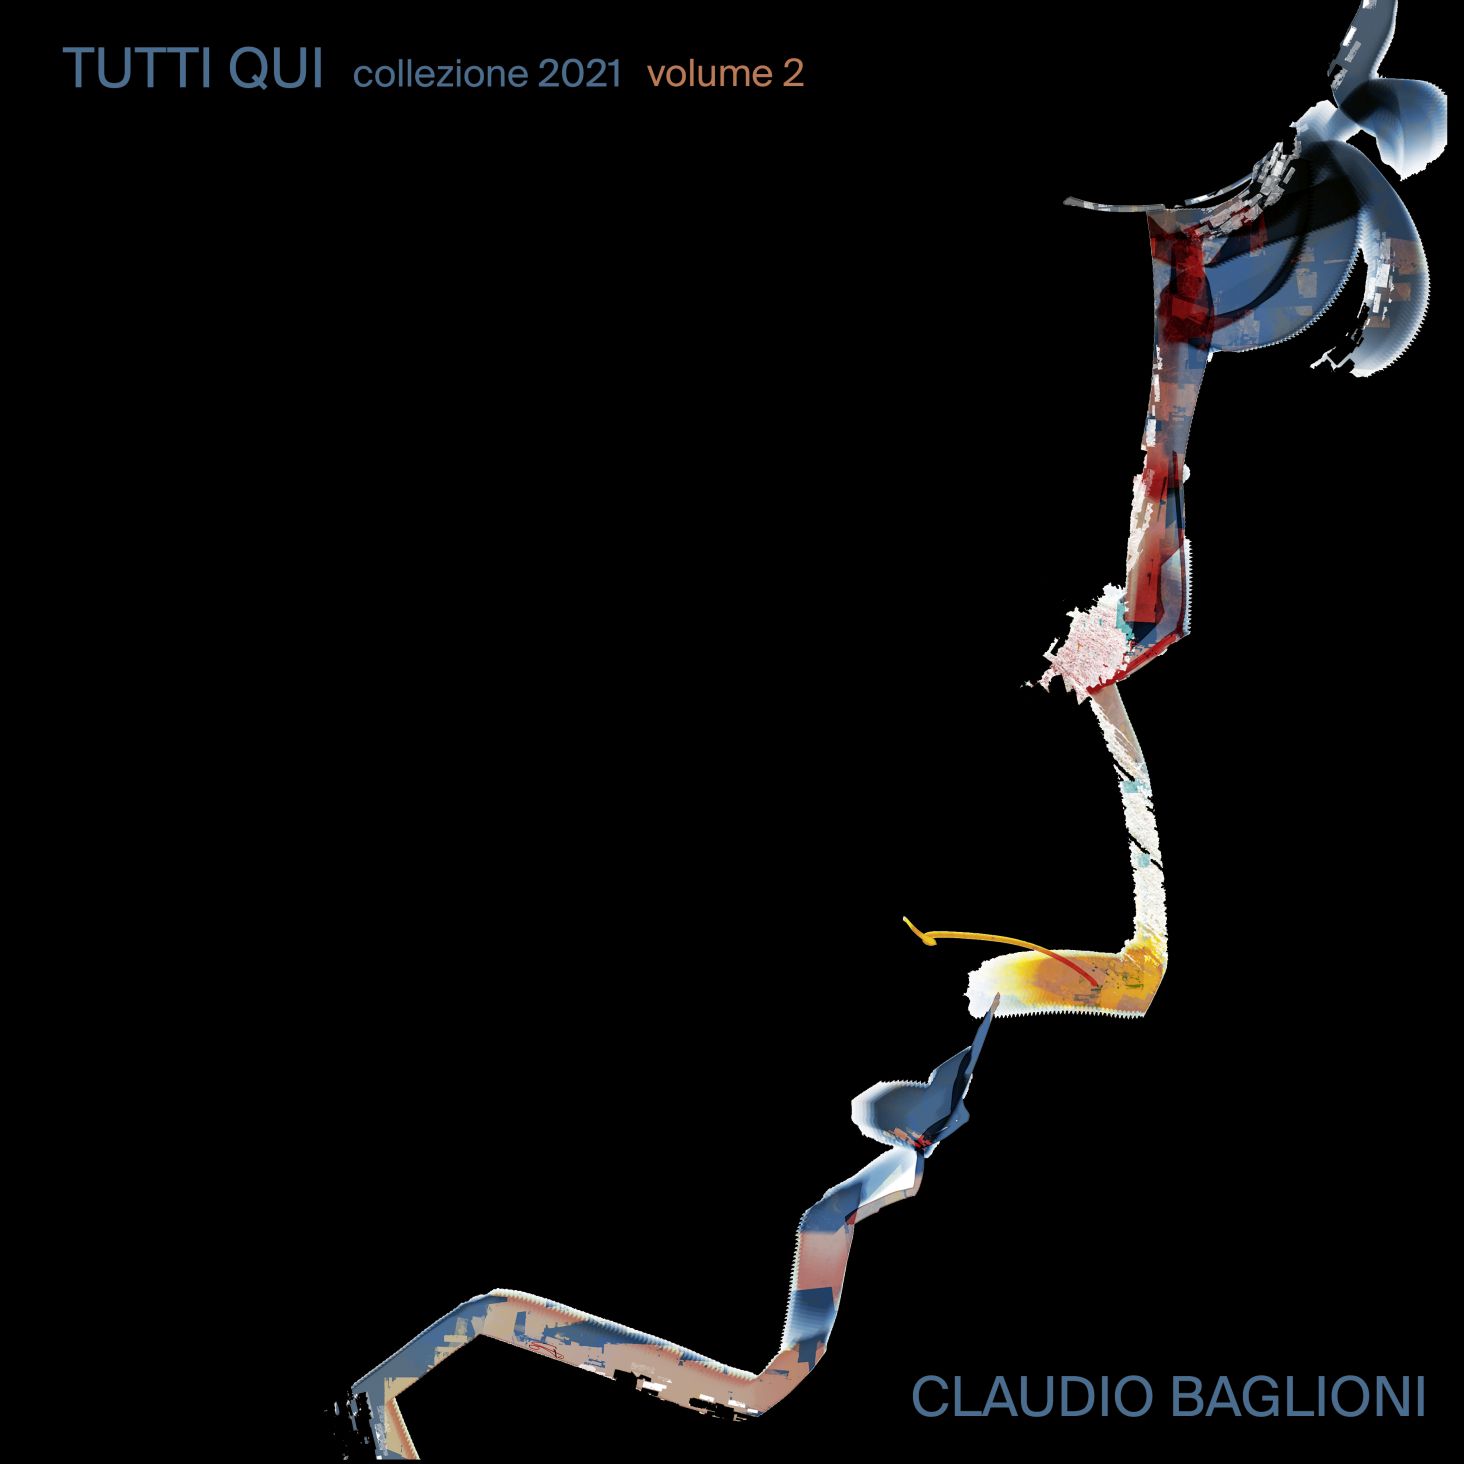 Claudio Baglioni album e tour - immagini